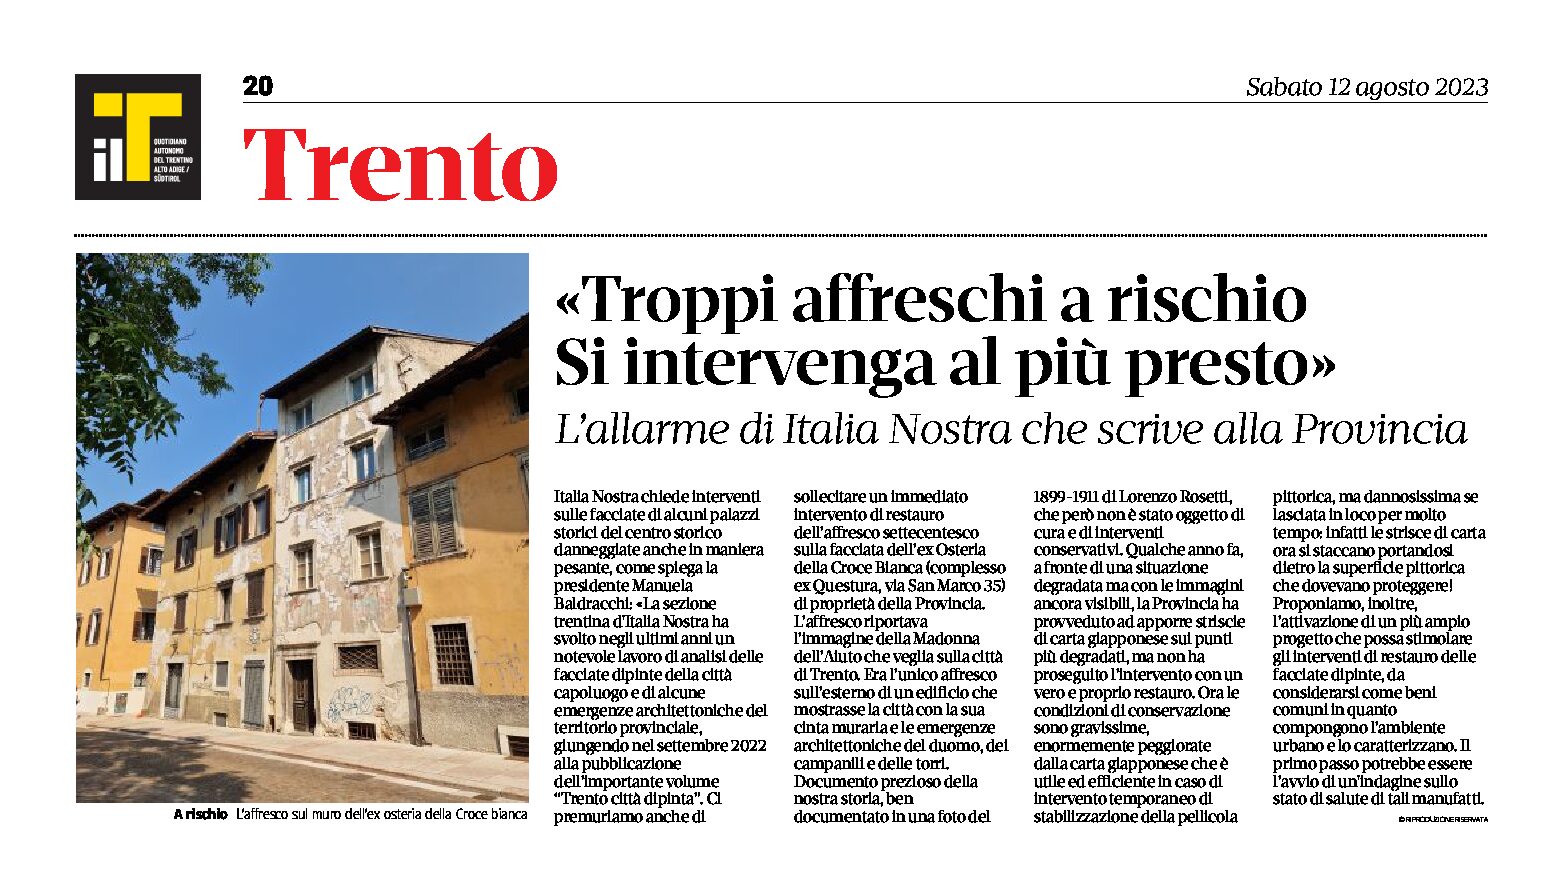 Trento: l’allarme di Italia Nostra “troppi affreschi a rischio, si intervenga al più presto”